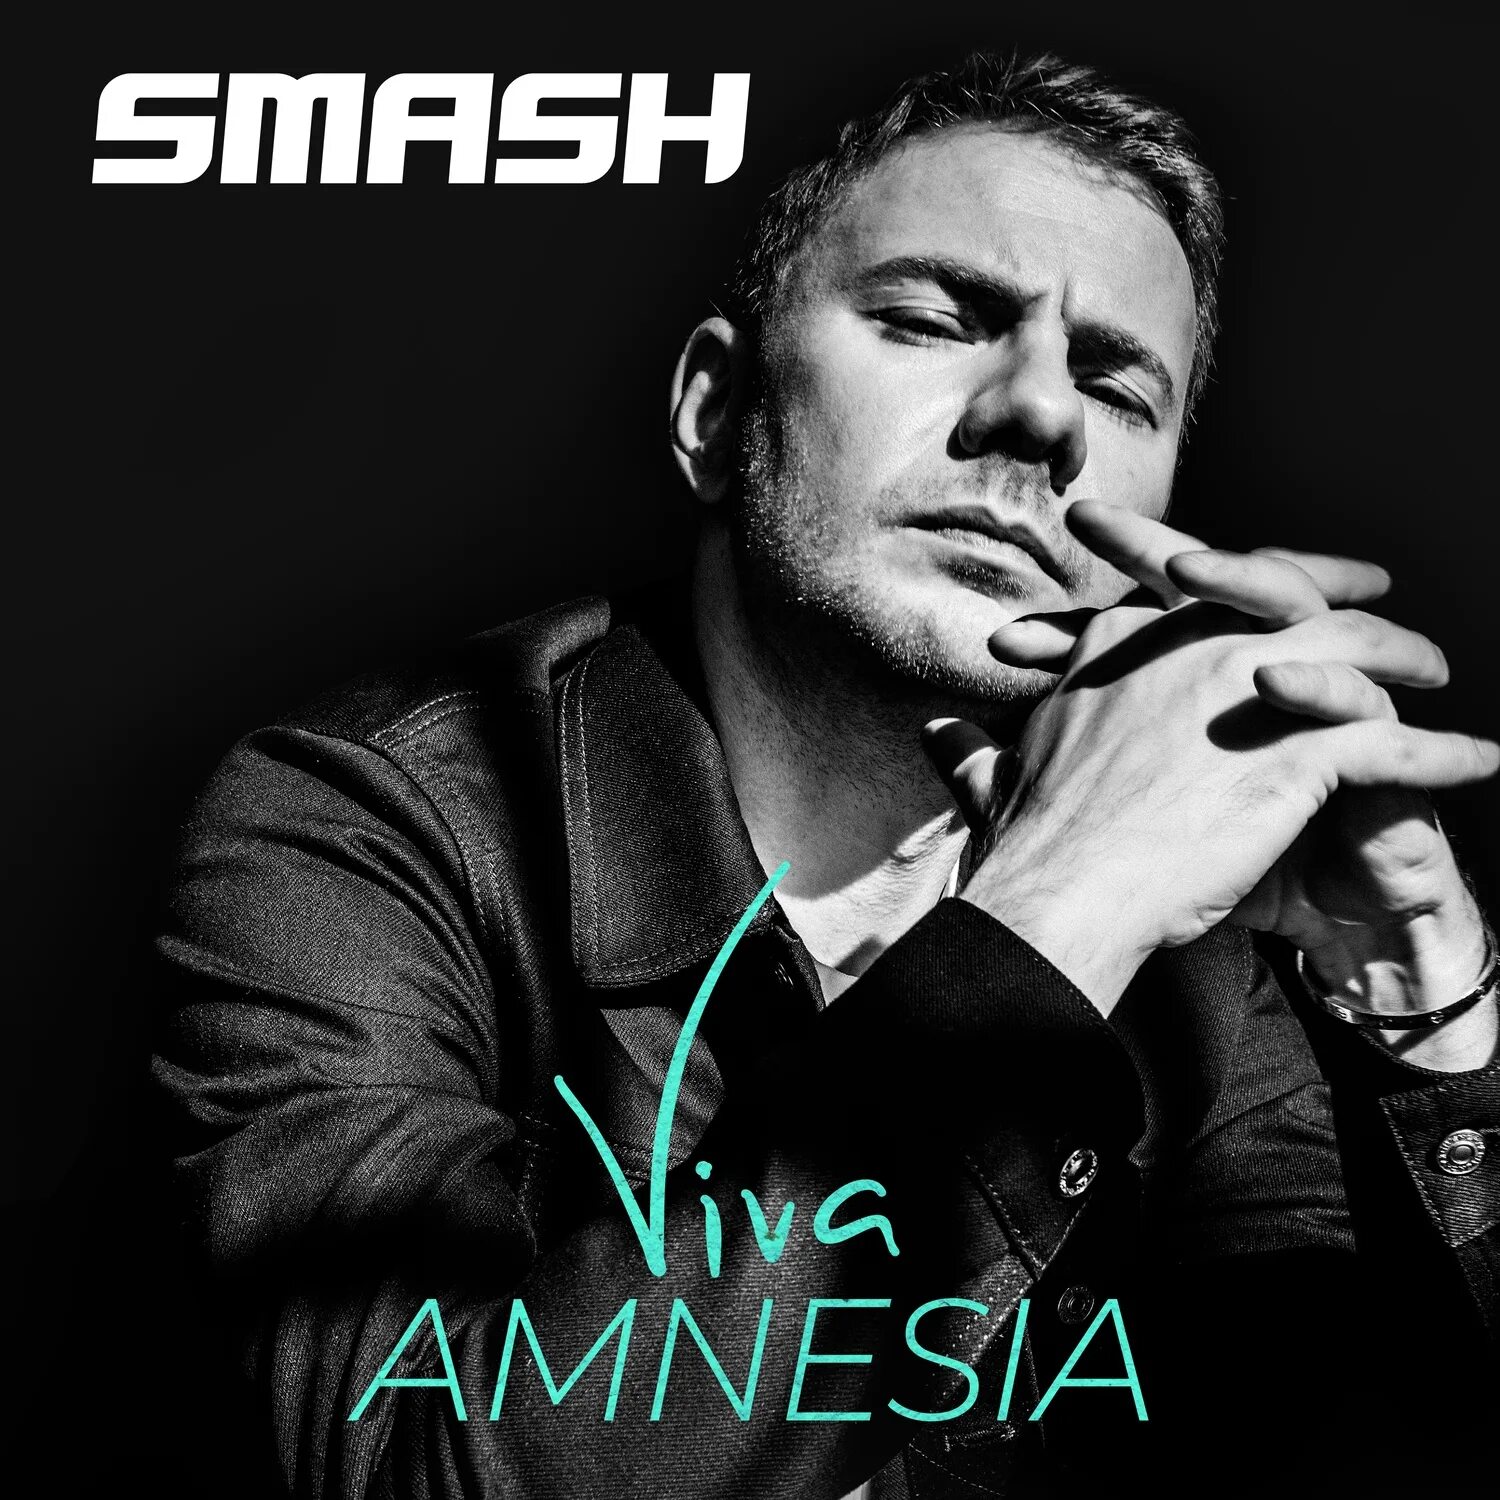 DJ Smash. Smash певец. DJ Smash Viva Amnesia. DJ Smash фото.